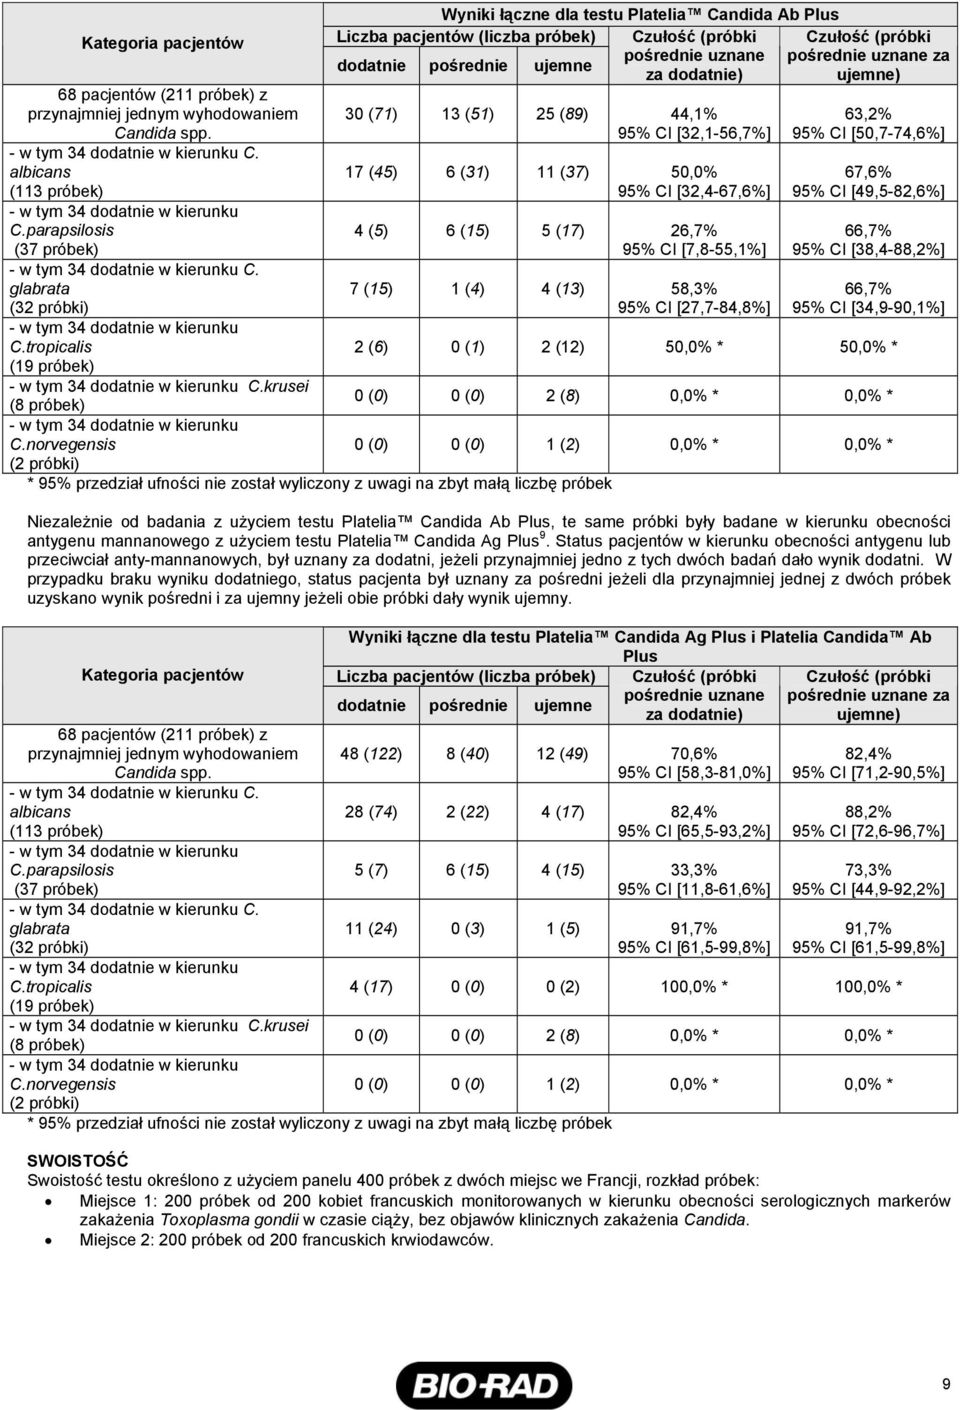 norvegensis (2 próbki) Wyniki łączne dla testu Platelia Candida Ab Plus Liczba pacjentów (liczba próbek) Czułość (próbki Czułość (próbki pośrednie uznane pośrednie uznane za dodatnie pośrednie ujemne